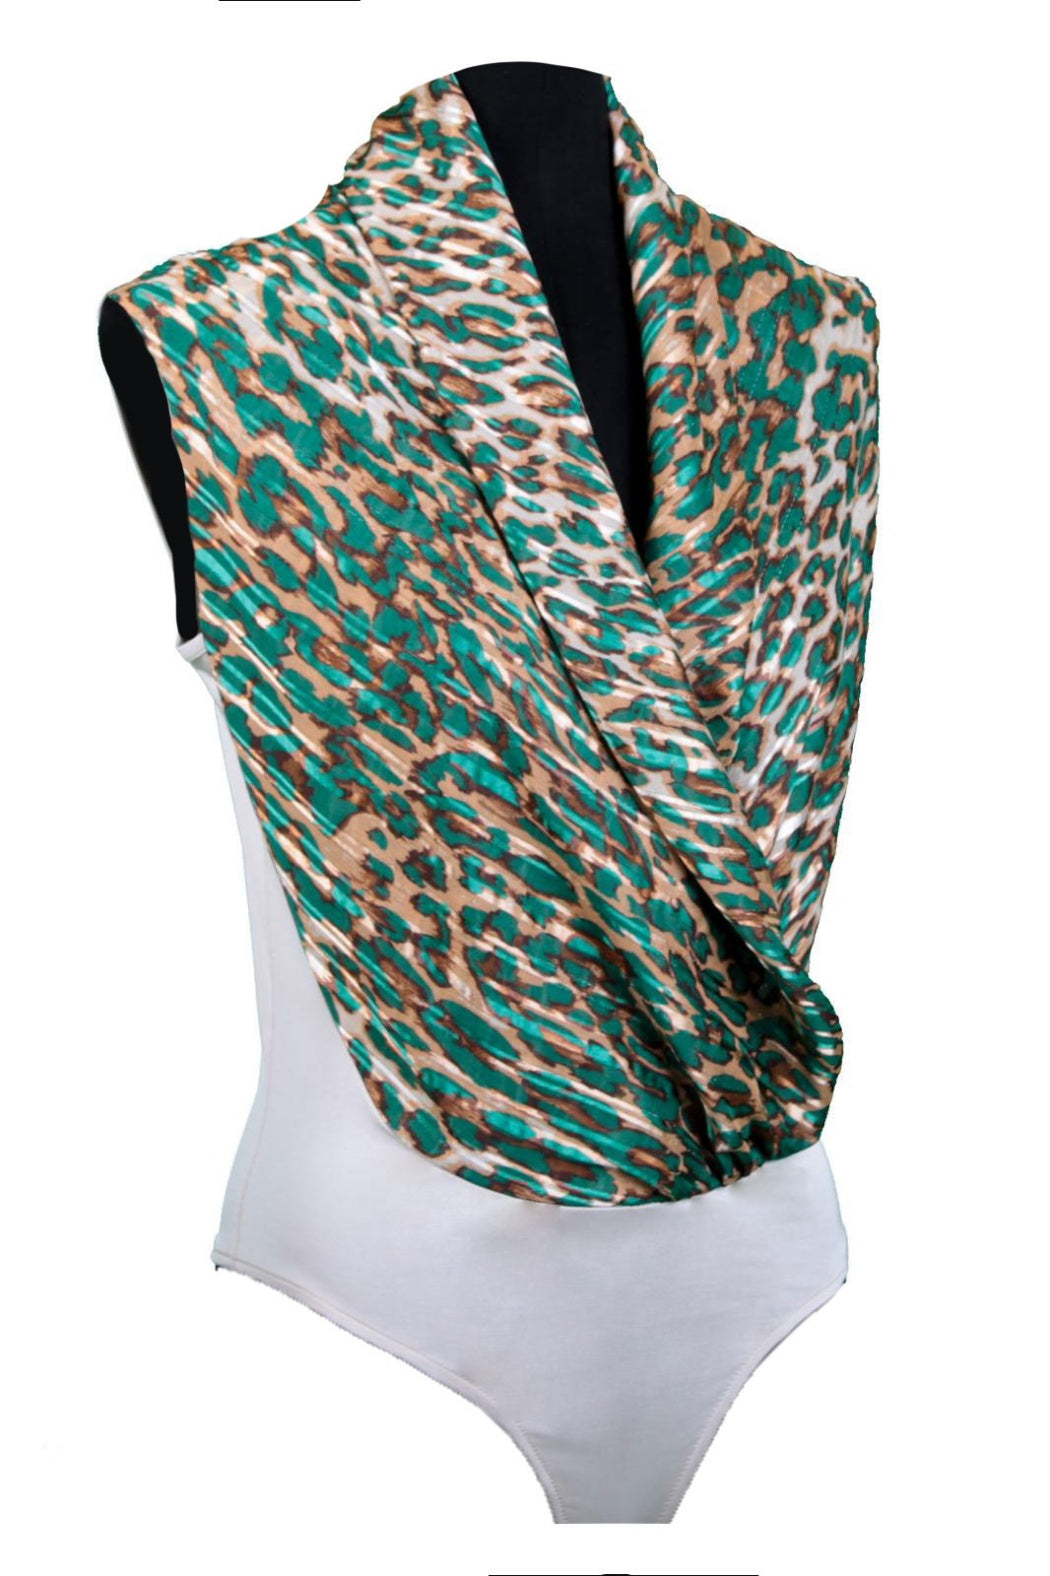 Estee Green Leopard Patterned Sleeveless Bodysuit